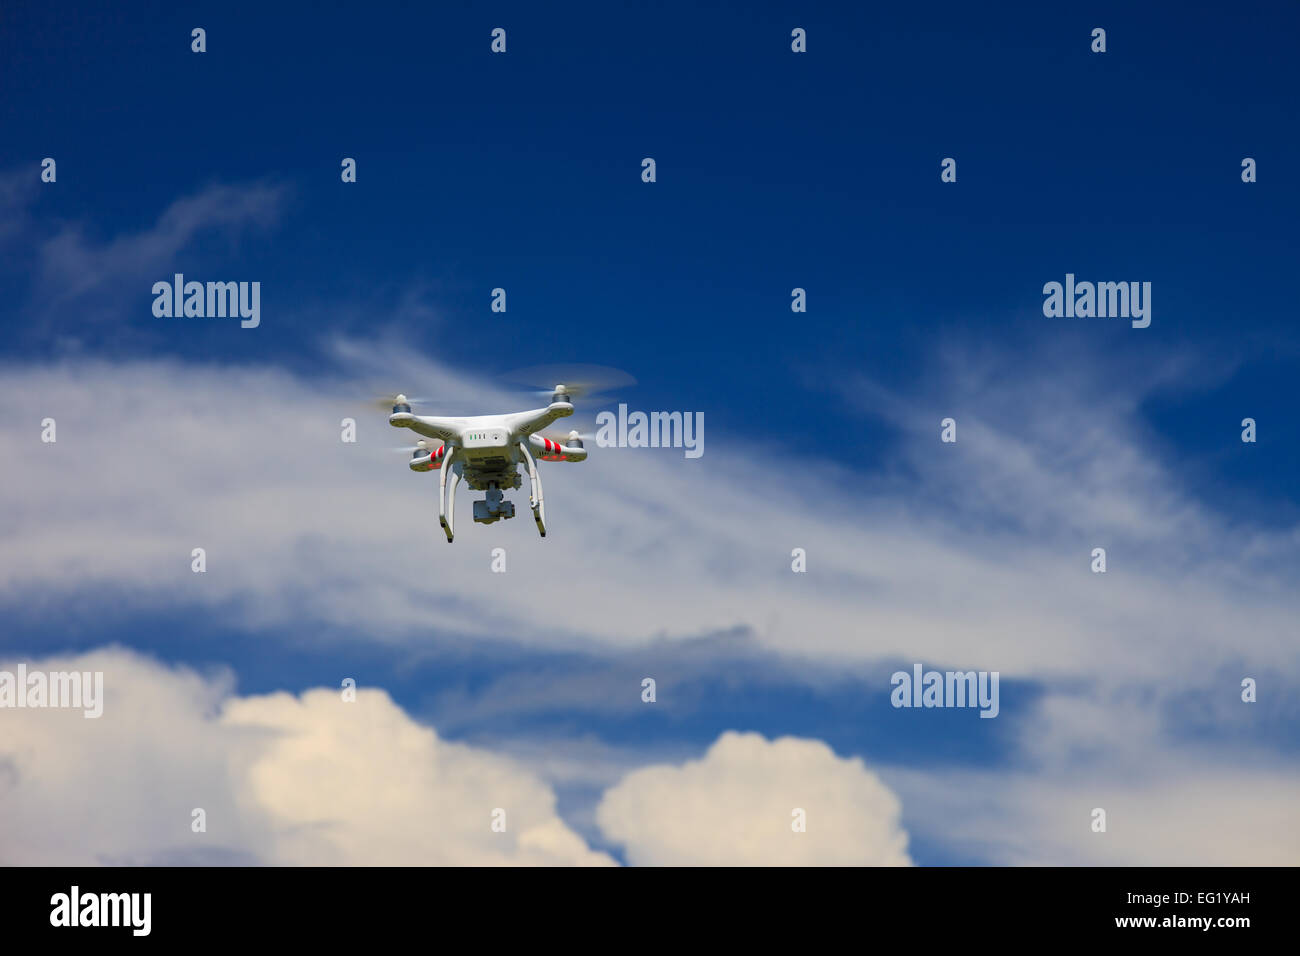 Una vista desde abajo de un Drone volando con un gimbal y cámara conectada. Drone, fotografía, volando, vigilancia Foto de stock